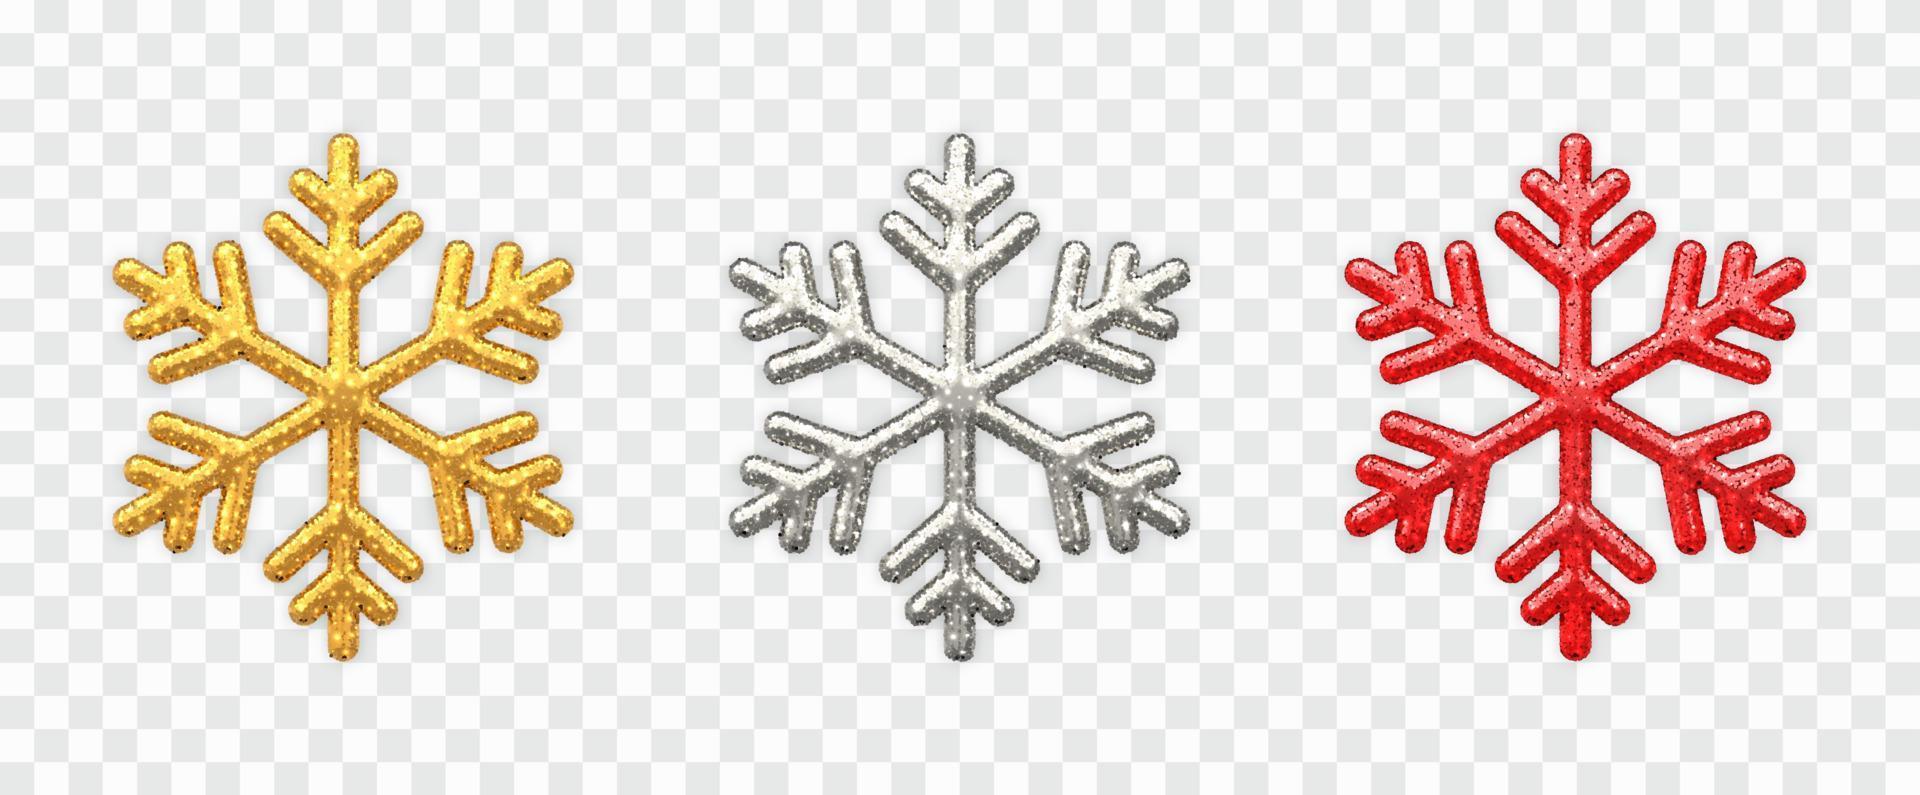 insieme di fiocchi di neve. scintillanti fiocchi di neve dorati, argentati e rossi con texture glitter isolati su sfondo trasparente. decorazione natalizia. illustrazione vettoriale. vettore